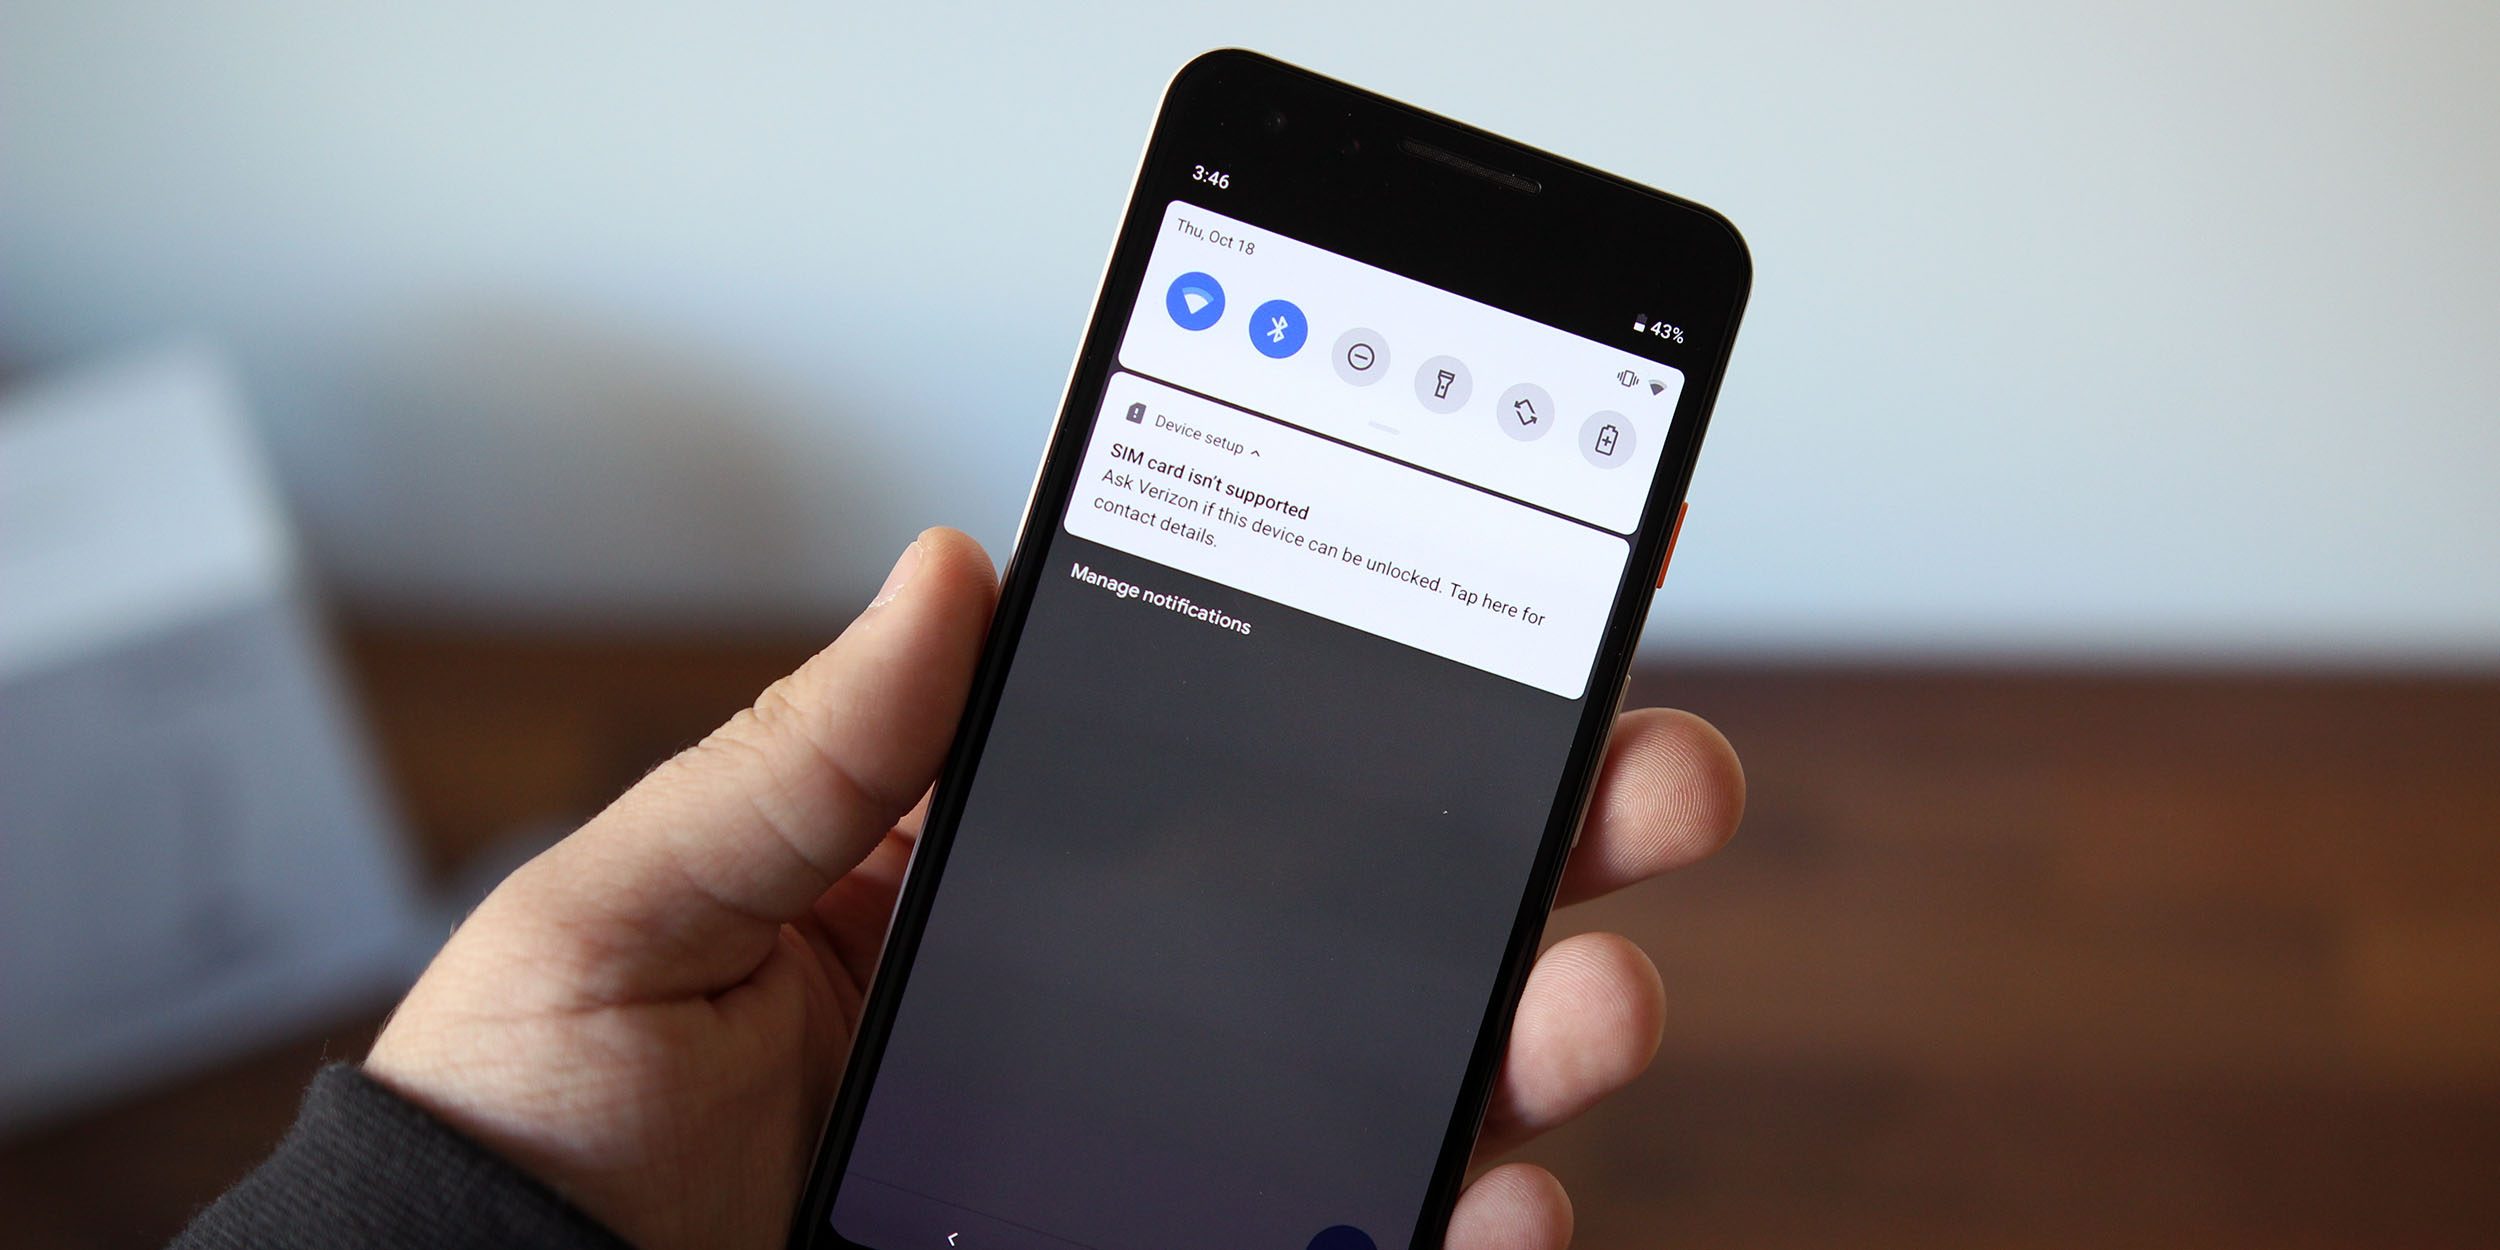 Android Q 允许运营商锁定 SIM 卡